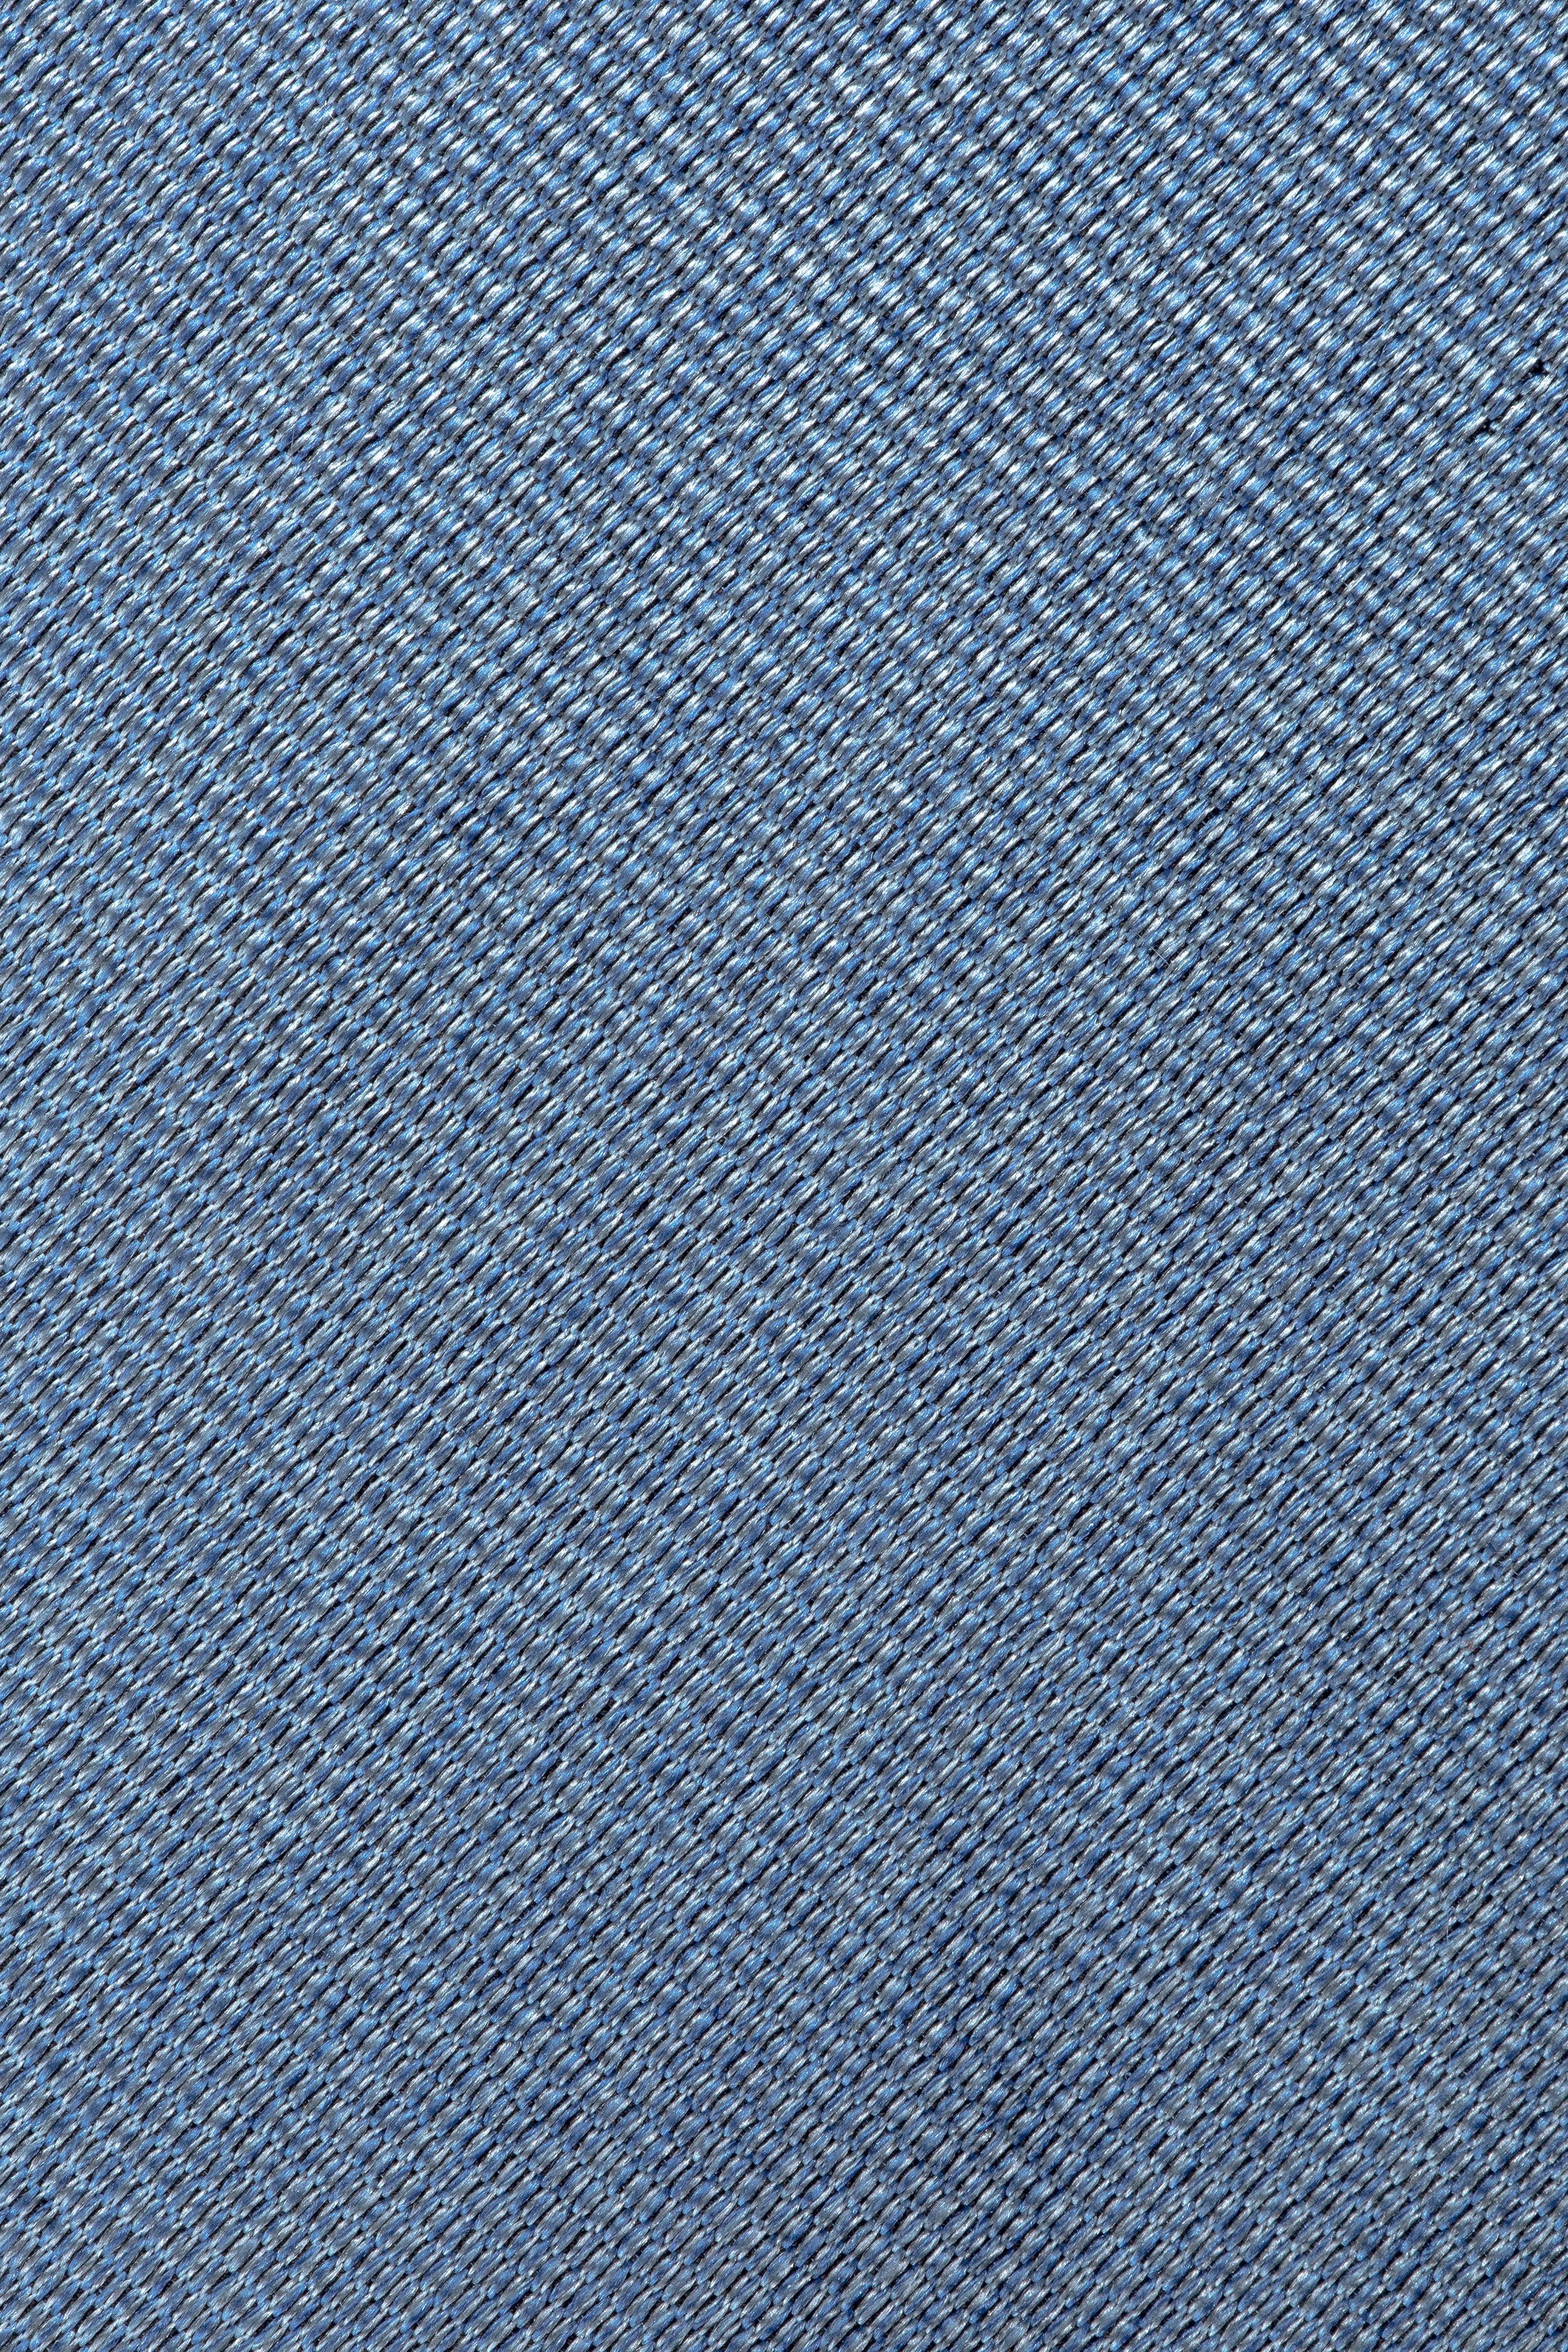 Vue alternative 1 Cravate Tissée Unie Bleue Bowman